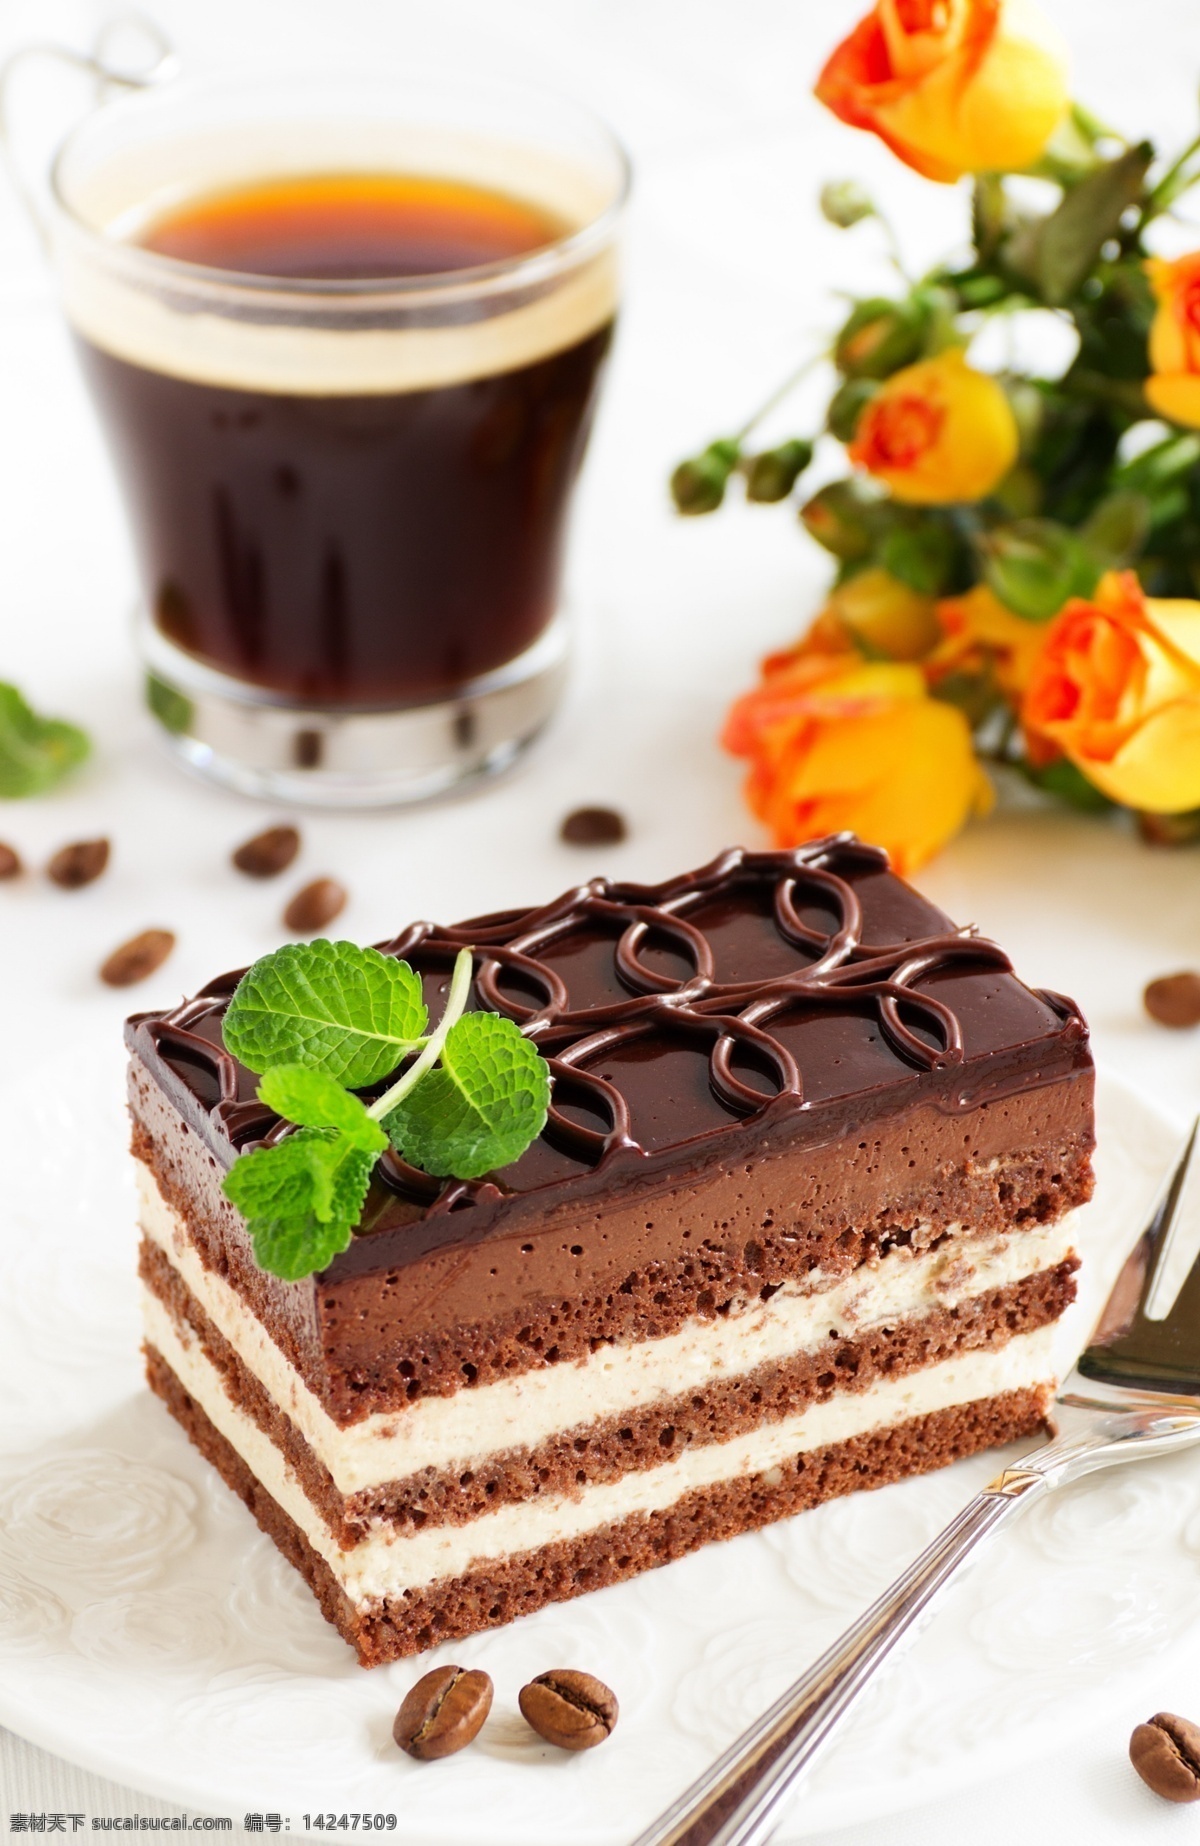 蛋糕 美食蛋糕 蛋糕图片 意境蛋糕 黑色蛋糕 切块蛋糕 巧克力蛋糕 招贴设计